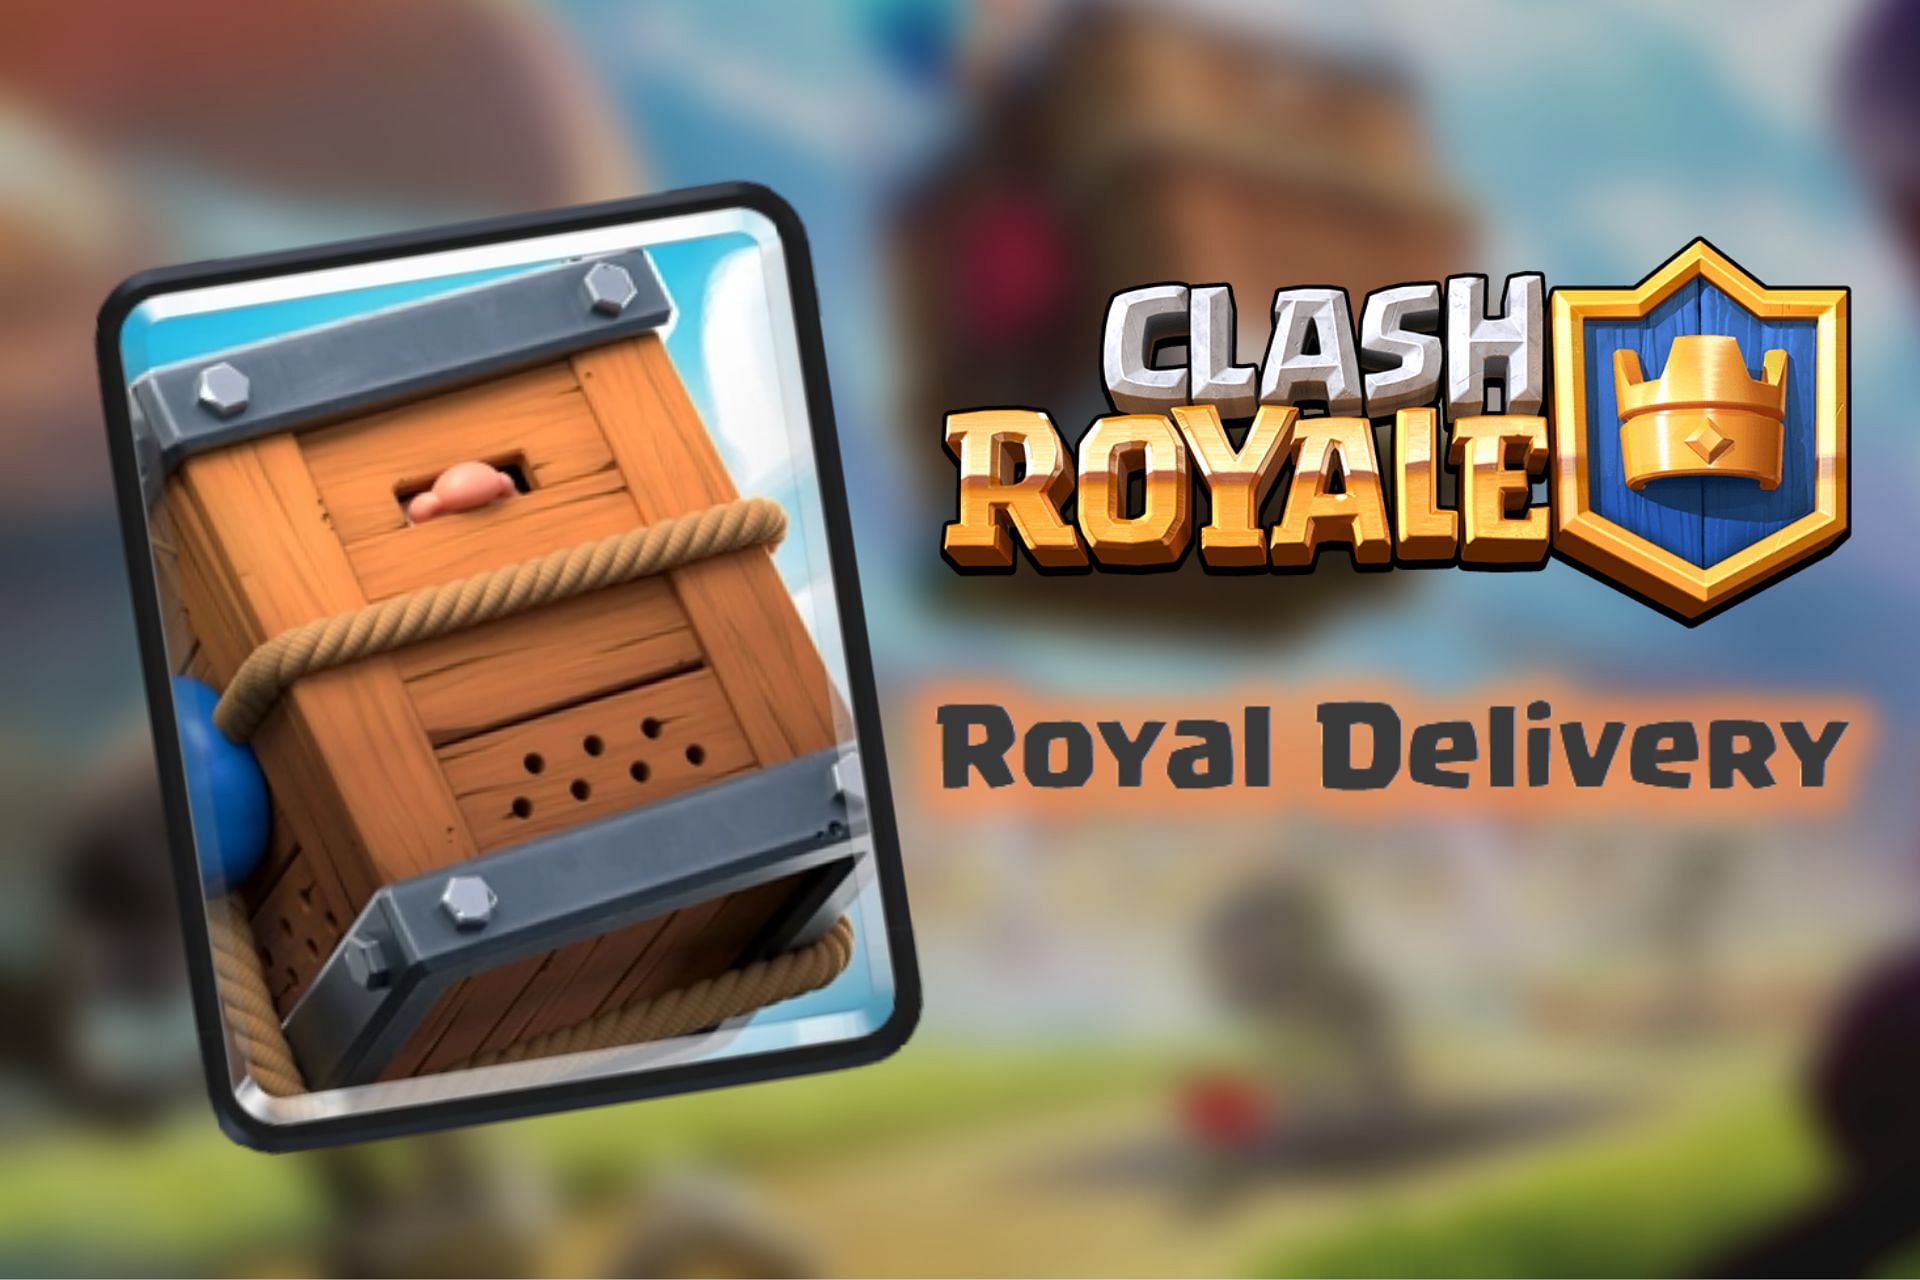 Royal Delivery Drop Challenge in Clash Royale (Image via Sportskeeda)